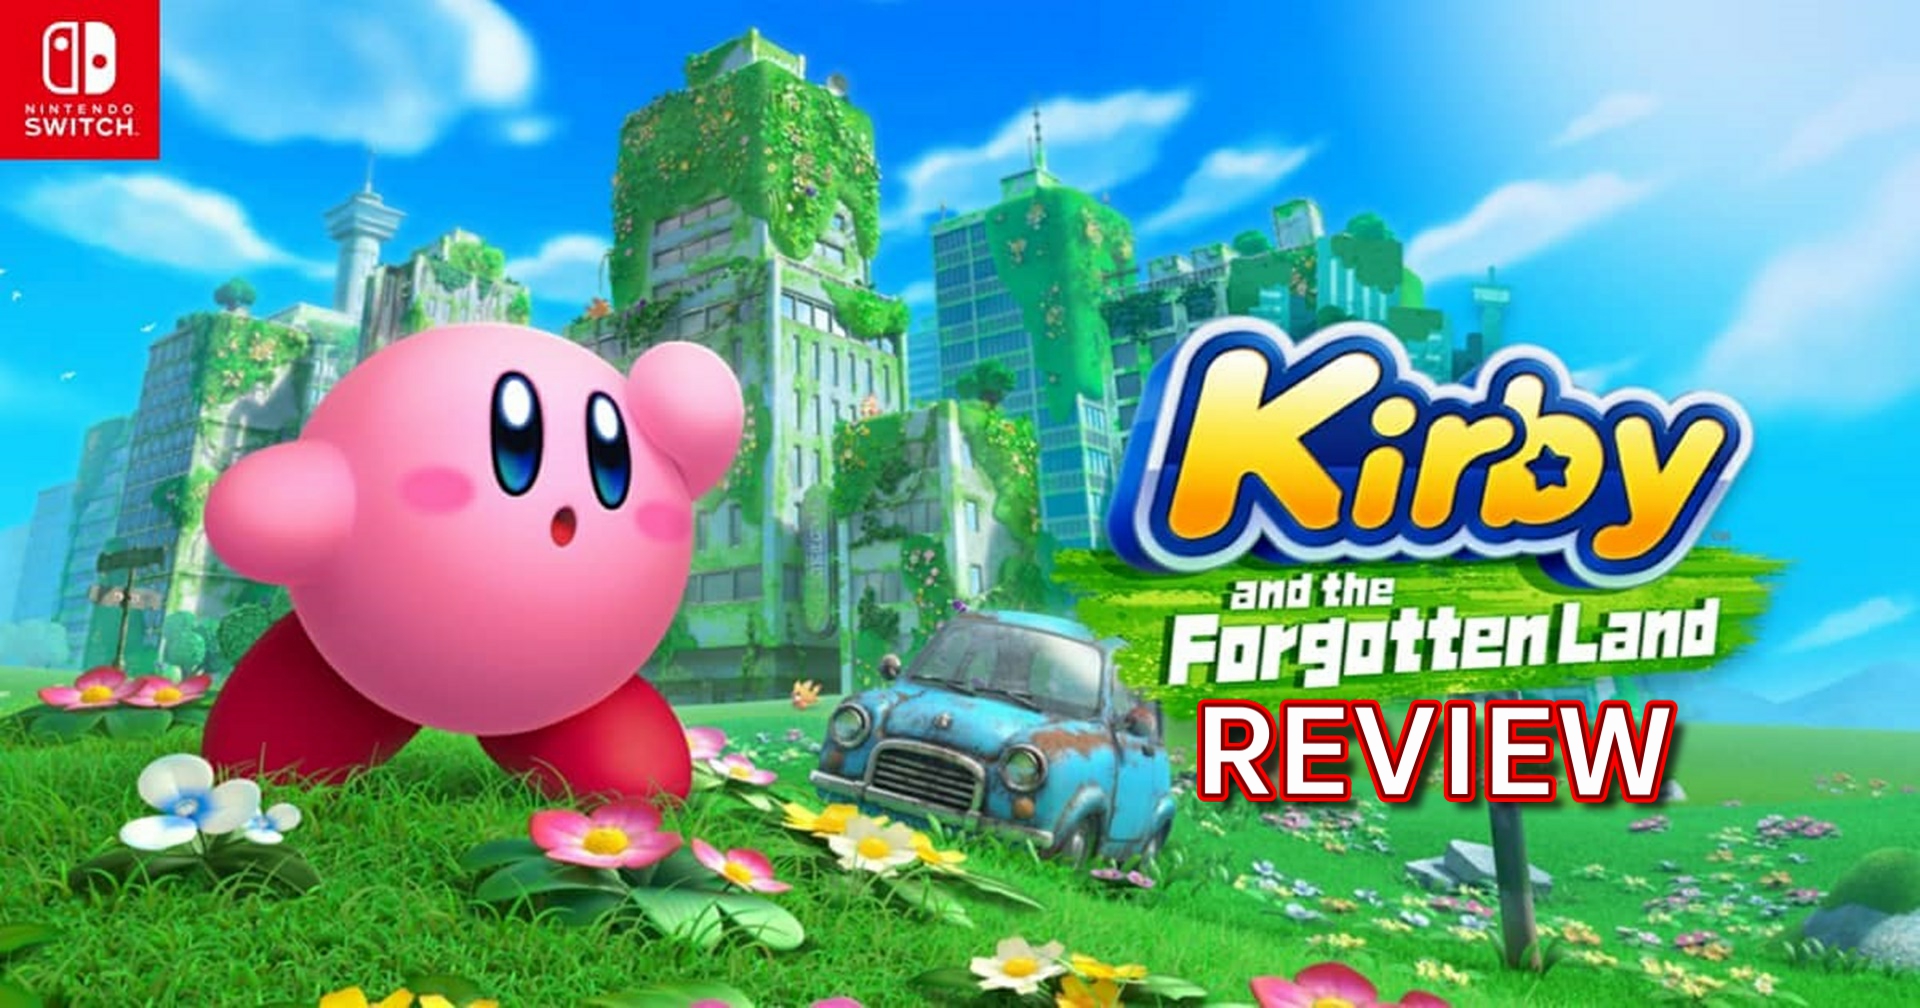 รีวิวเกม Kirby and the Forgotten Land เคอร์บี้ฉบับ 3 มิติที่กินจุกว่าเดิม